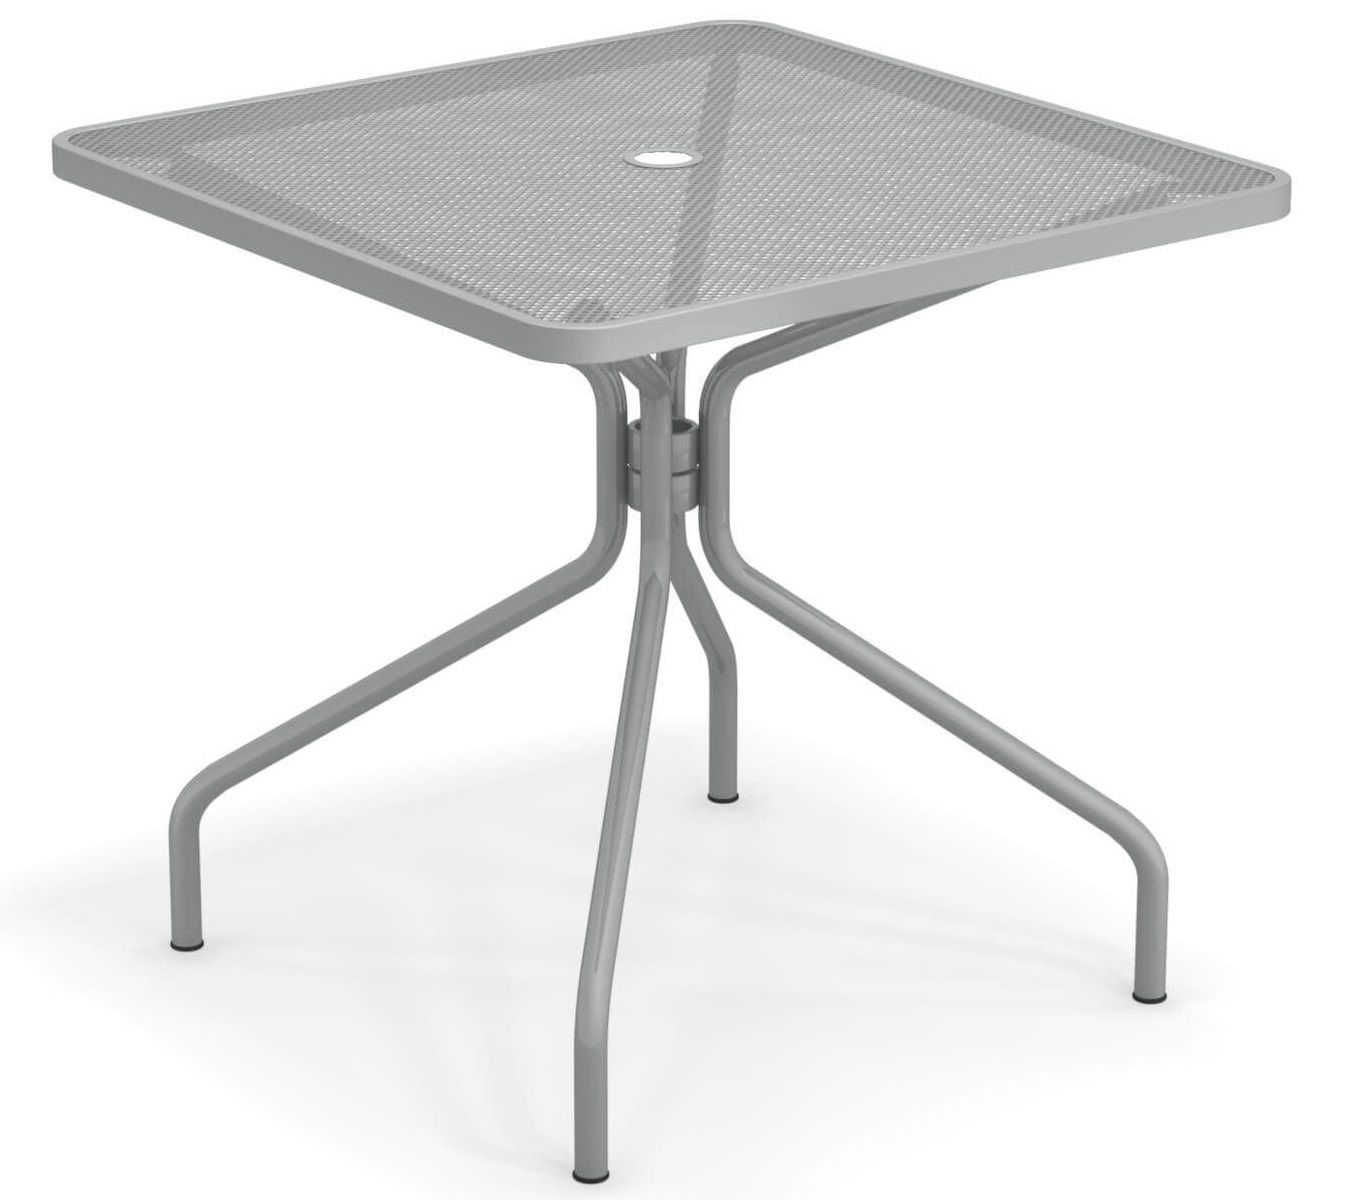 Emu designové zahradní stoly Cambi Square Table (80 x 80 cm) - DESIGNPROPAGANDA